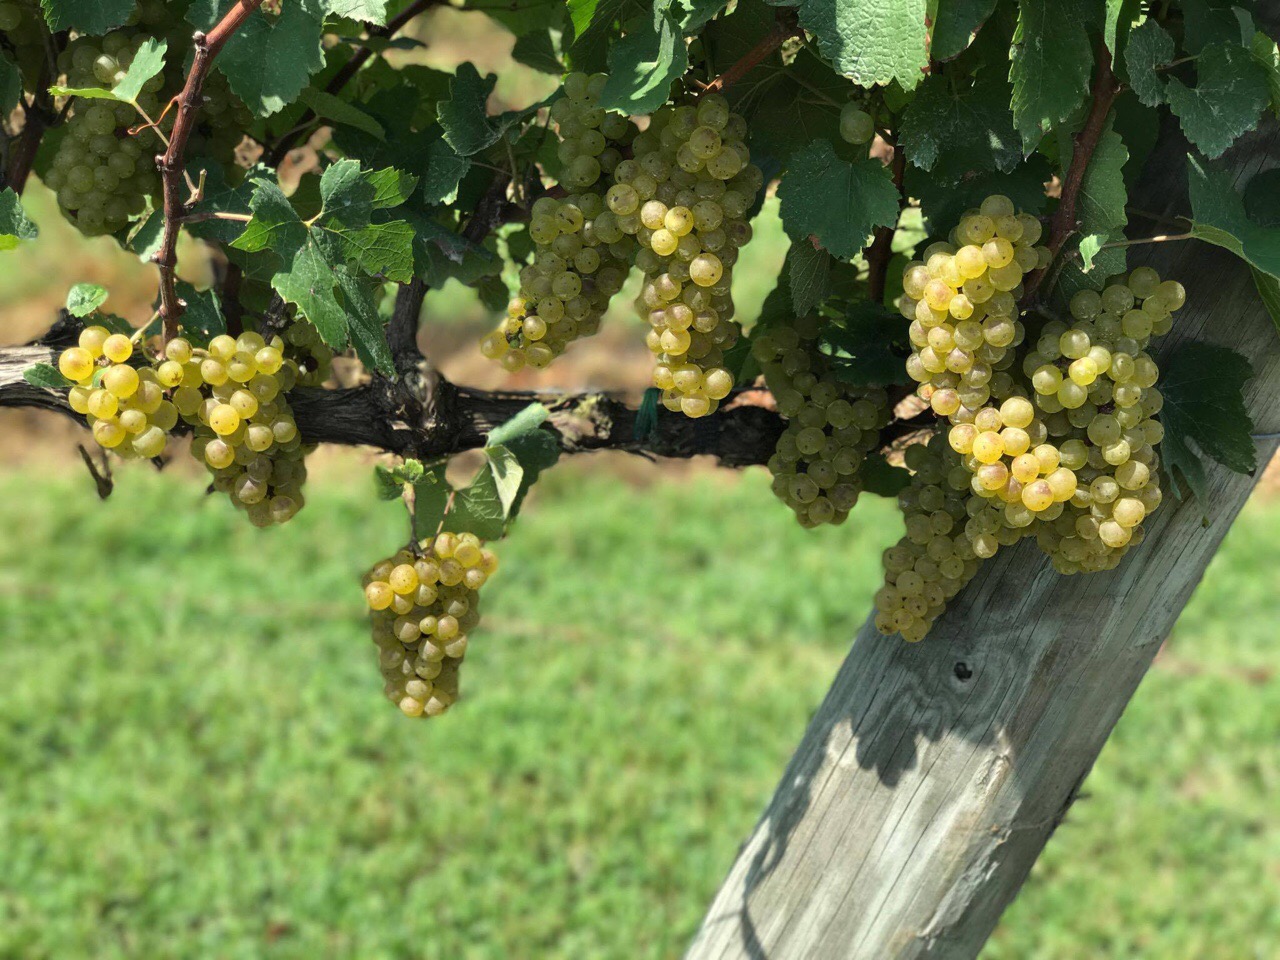 Vermentino grapes courtesy of Piccione Vineyards